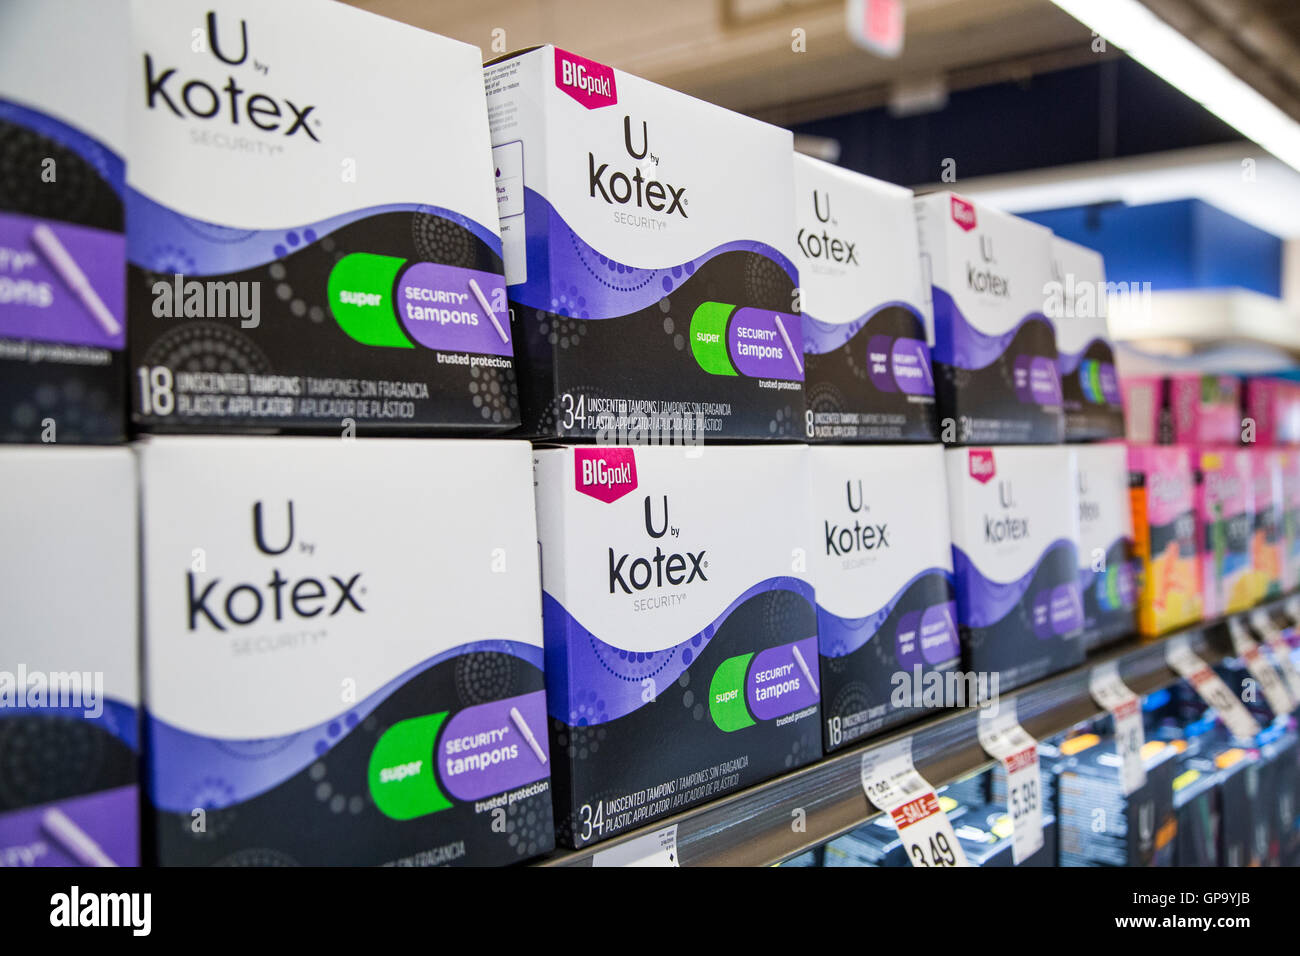 Stapel von Kotex Marke Tampons auf einem Regal in einer Apotheke Stockfoto